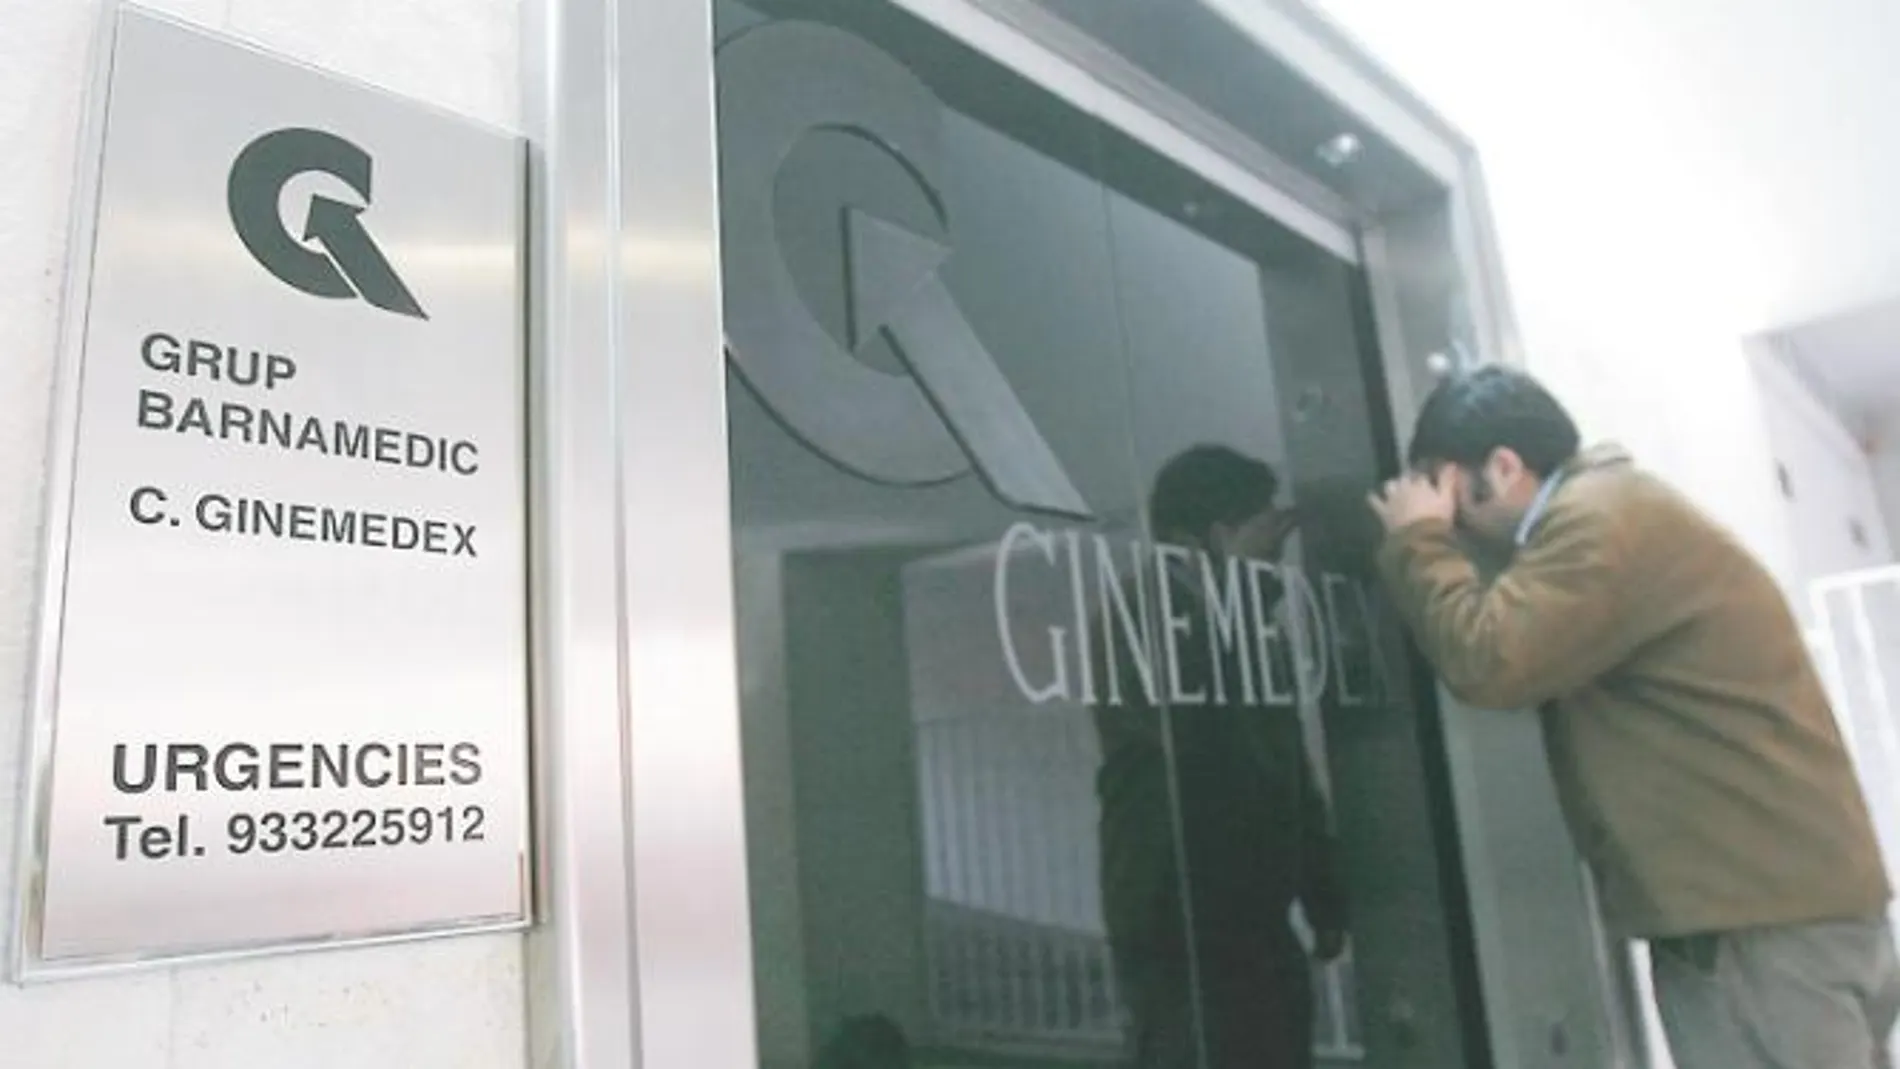 Fachada de Ginemedex, una de las dos clínicas que Morín abrió en Barcelona para practicar abortos ilegales